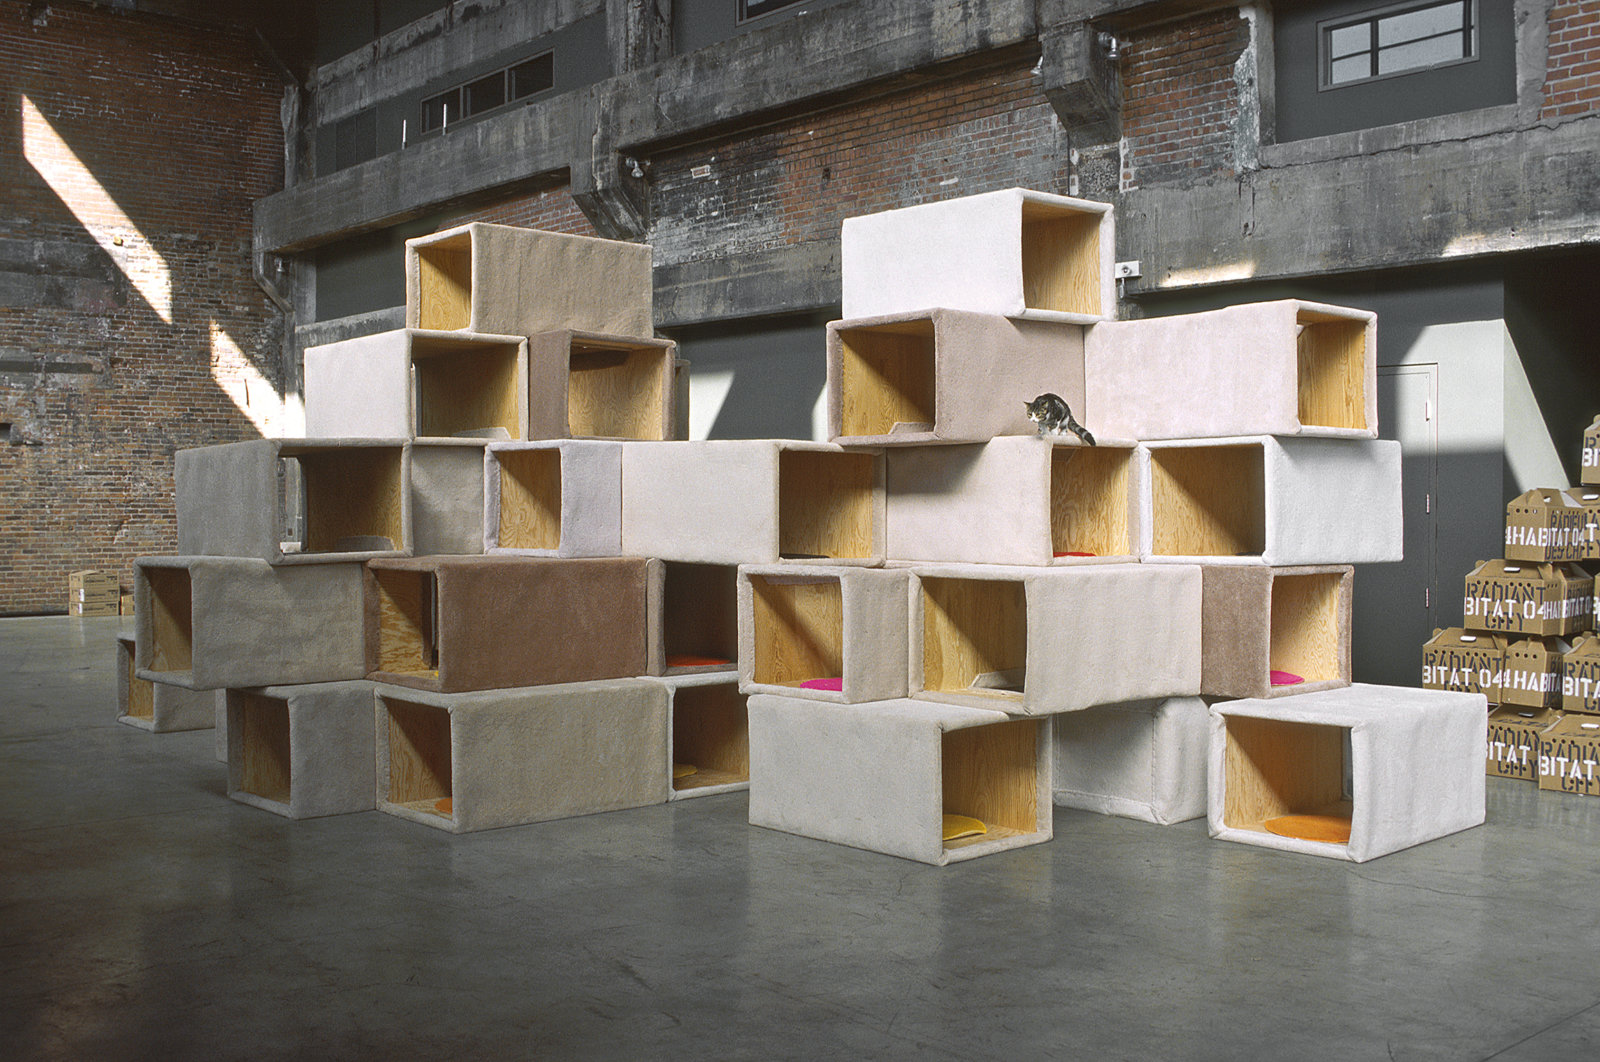 Brian Jungen, Habitat 04 - Cité radieuse des chats/Cats Radiant City, 2004, plywood, carpet, cats, 132 x 180 x 336 in. (335 x 457 x 853 cm)